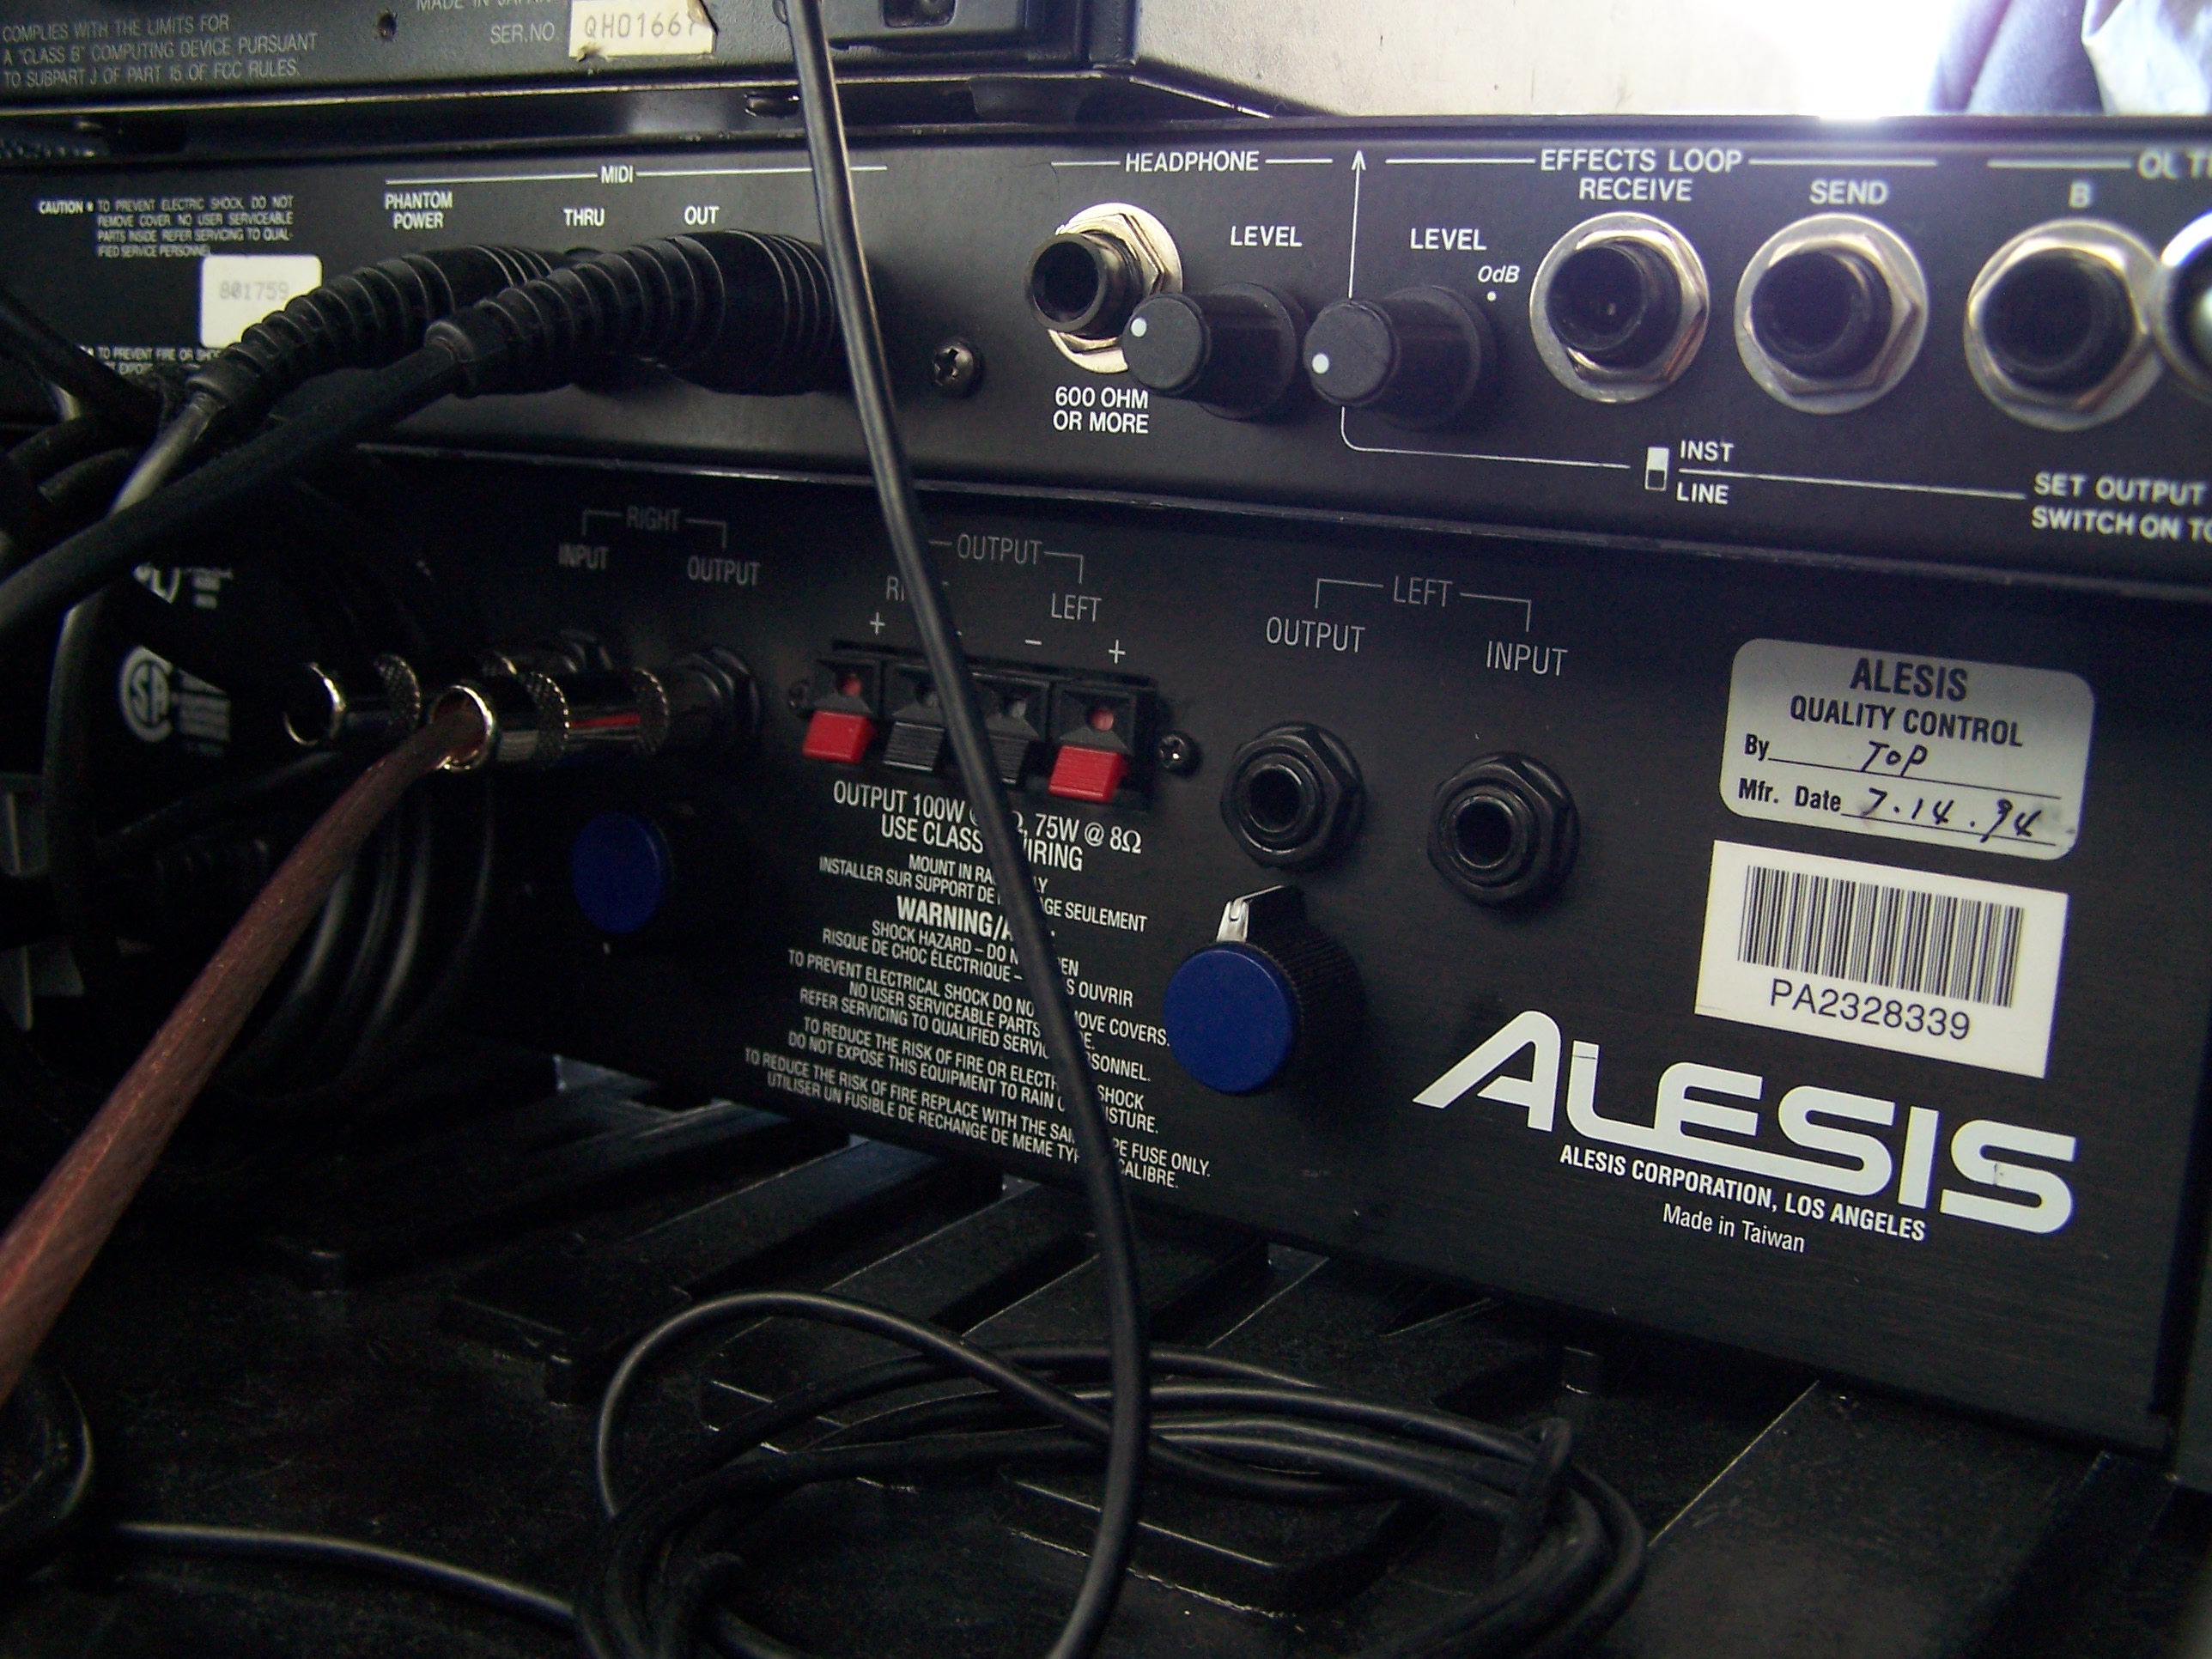 Amplifier in rack case